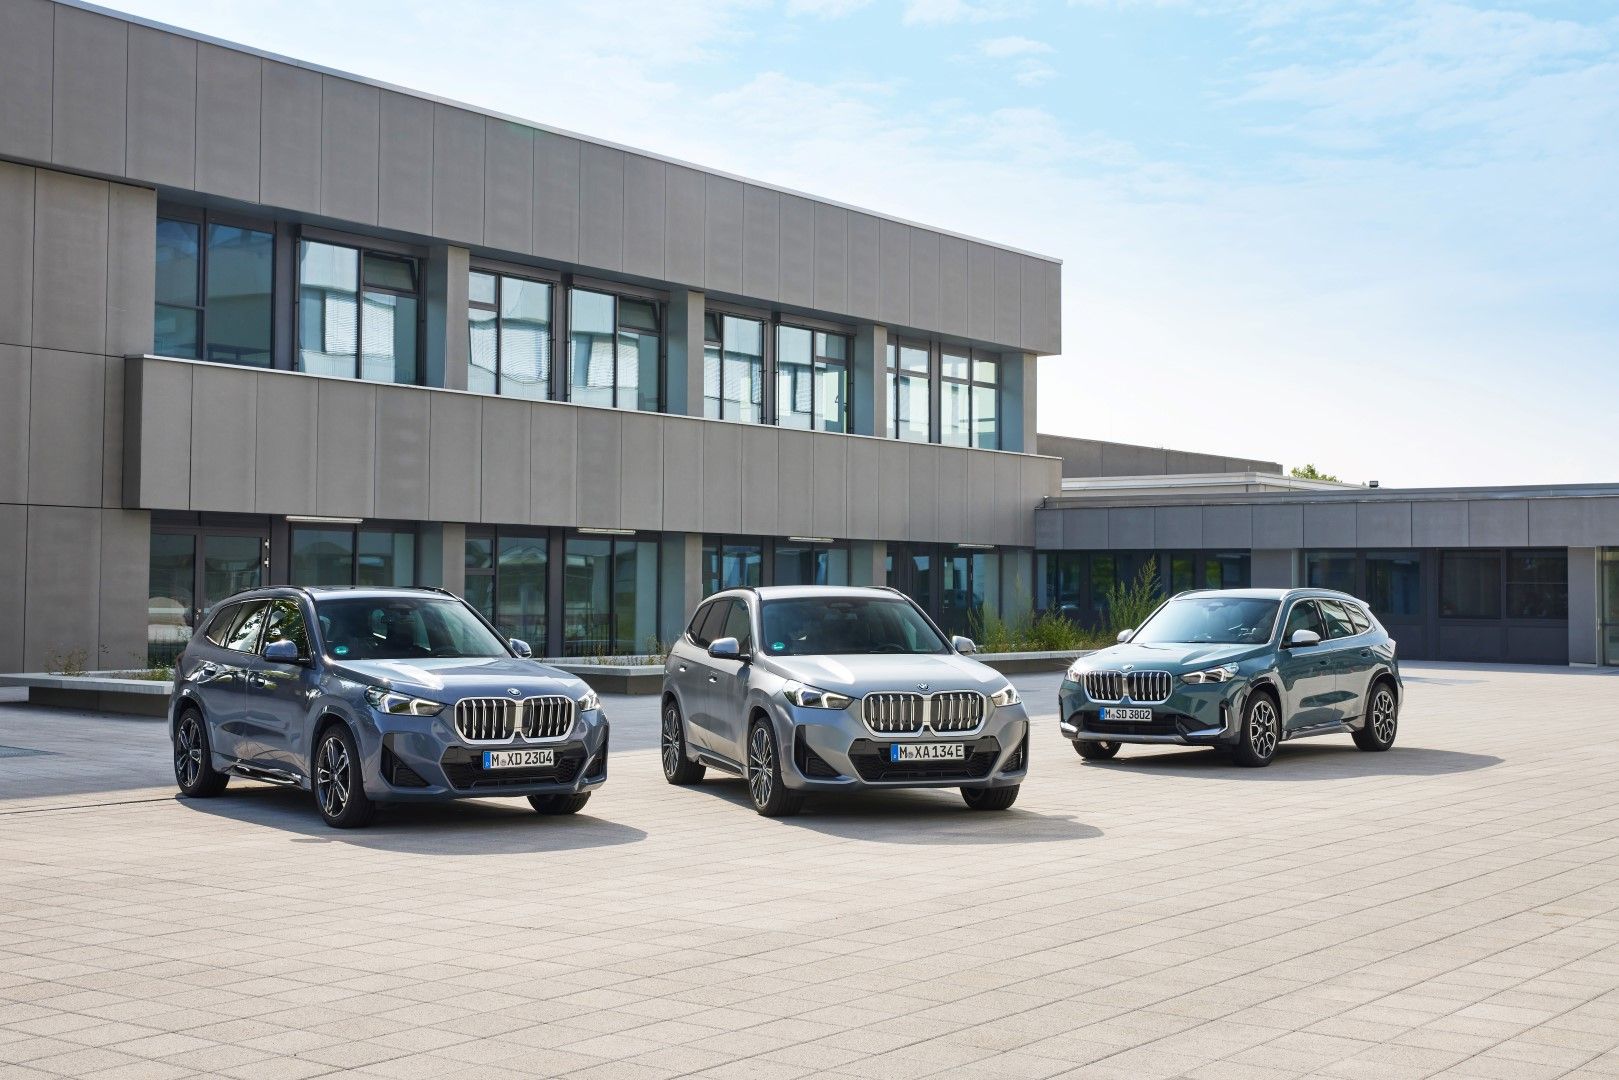 Η BMW προχωρά σε αναβαθμίσεις των μοντέλων της από το φθινόπωρο του 2022 και λανσάρει 2 νέα plug-in υβριδικά μοντέλα.